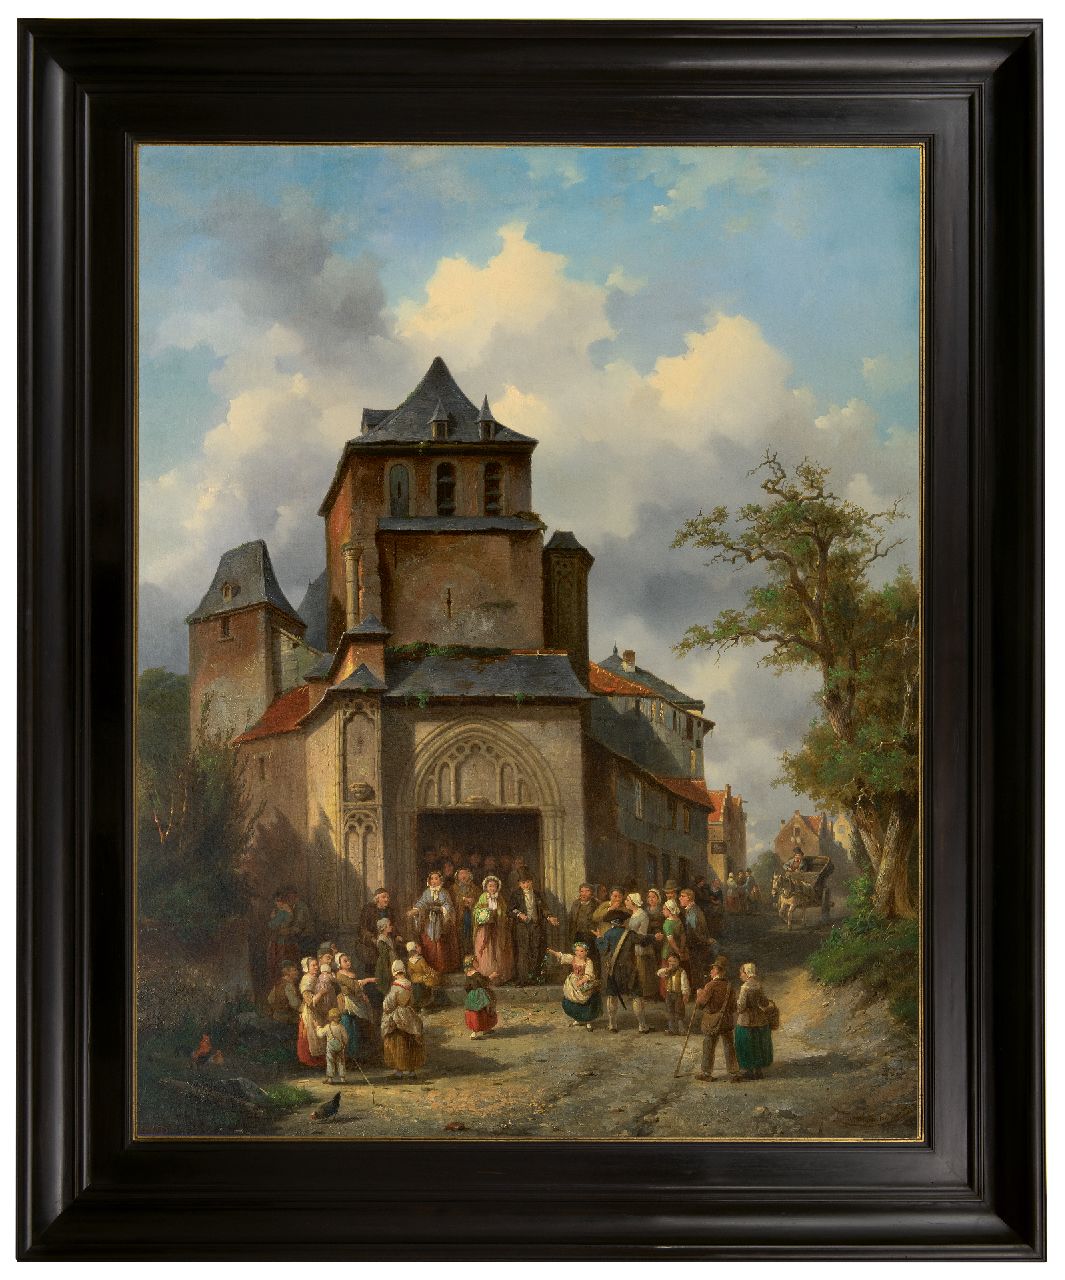 Carabain J.F.J.  | 'Jacques' François Joseph Carabain | Schilderijen te koop aangeboden | De gouden bruiloft, olieverf op doek 96,2 x 76,2 cm, gesigneerd rechtsonder en gedateerd 1861